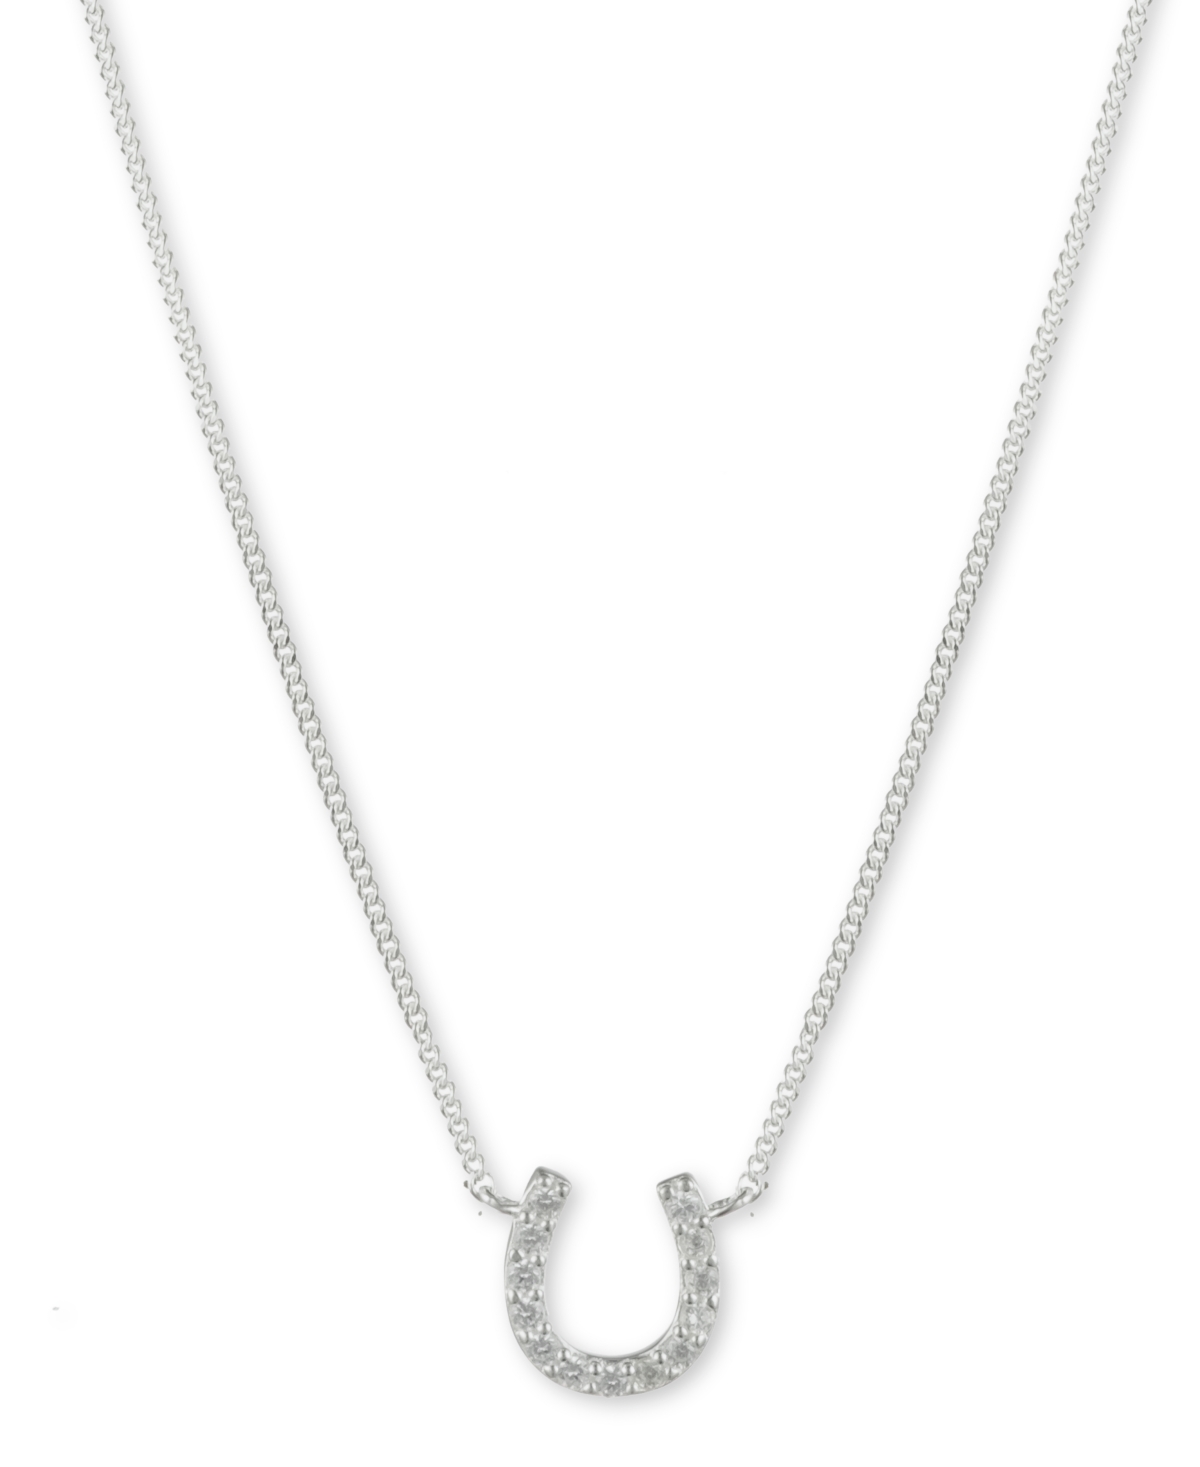 Lauren Ralph Lauren Cubic Zirconia Horseshoe Pendant Necklace in Sterling Silver, 14" + 3" extender - Silver